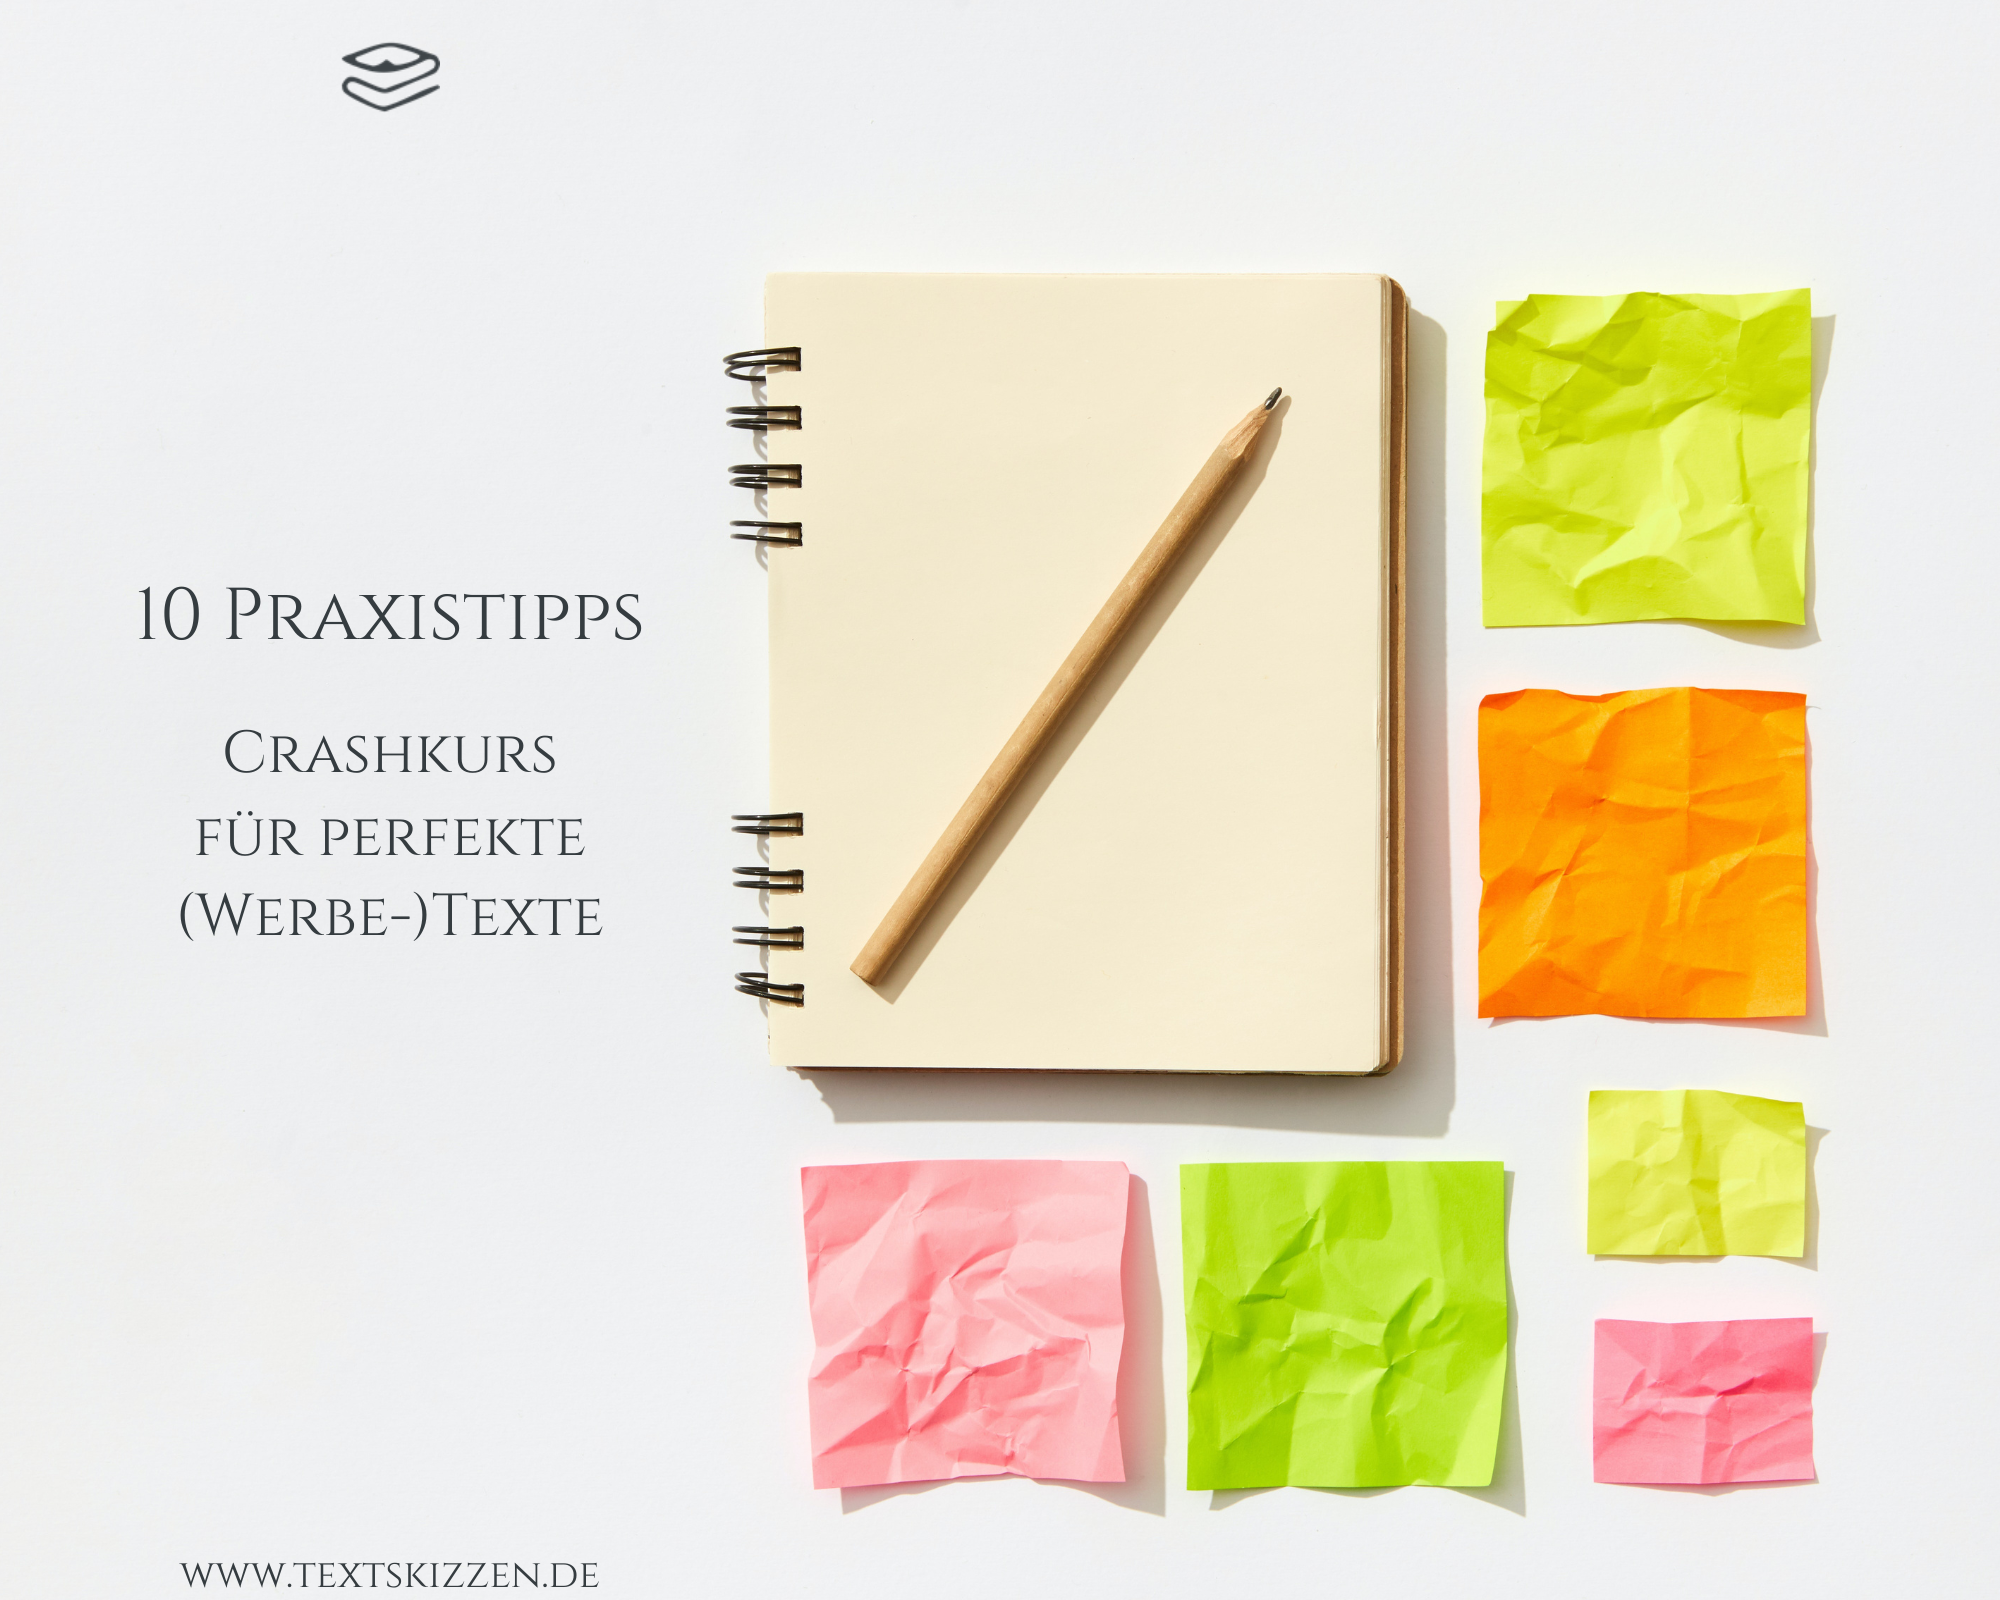 10 Praxistipps: Crashkurs für perfekte (Werbe-)Texte: Notizblock mit einem leeren Blatt, darauf liegt ein Bleistift, daneben 6 leere, bunte, zerknitterte Notizzettel (grün, gelb, orange, pink)